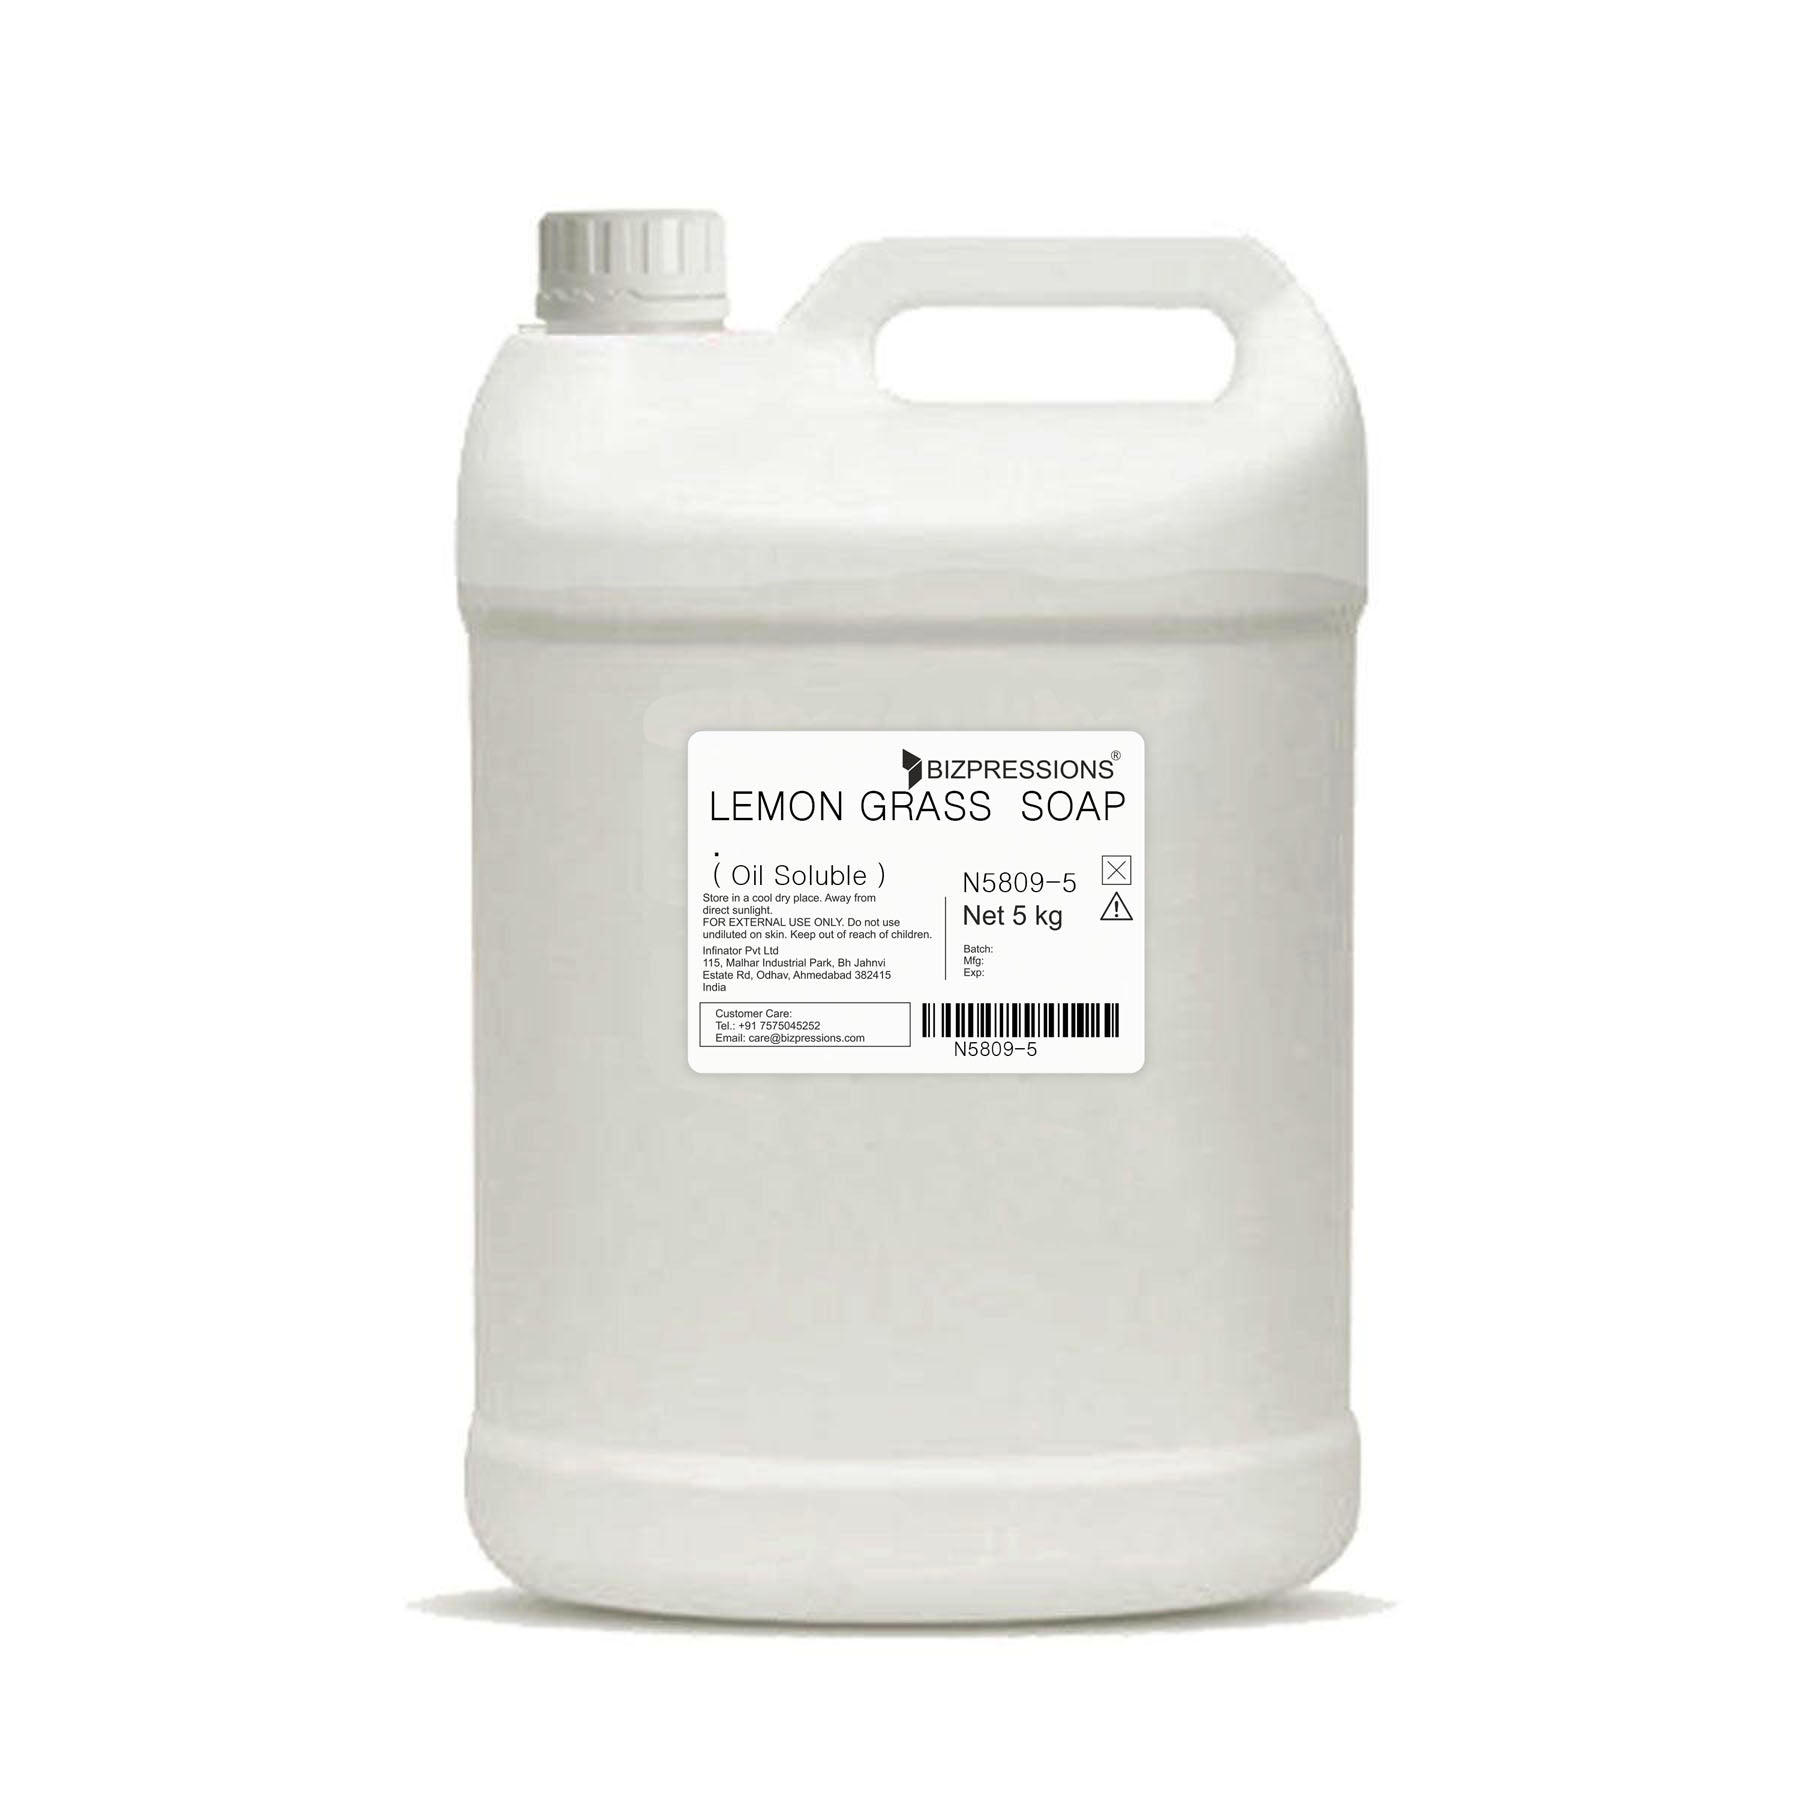 LEMON GRASS SOAP - Fragrance ( Oil Soluble ) - 5 kg